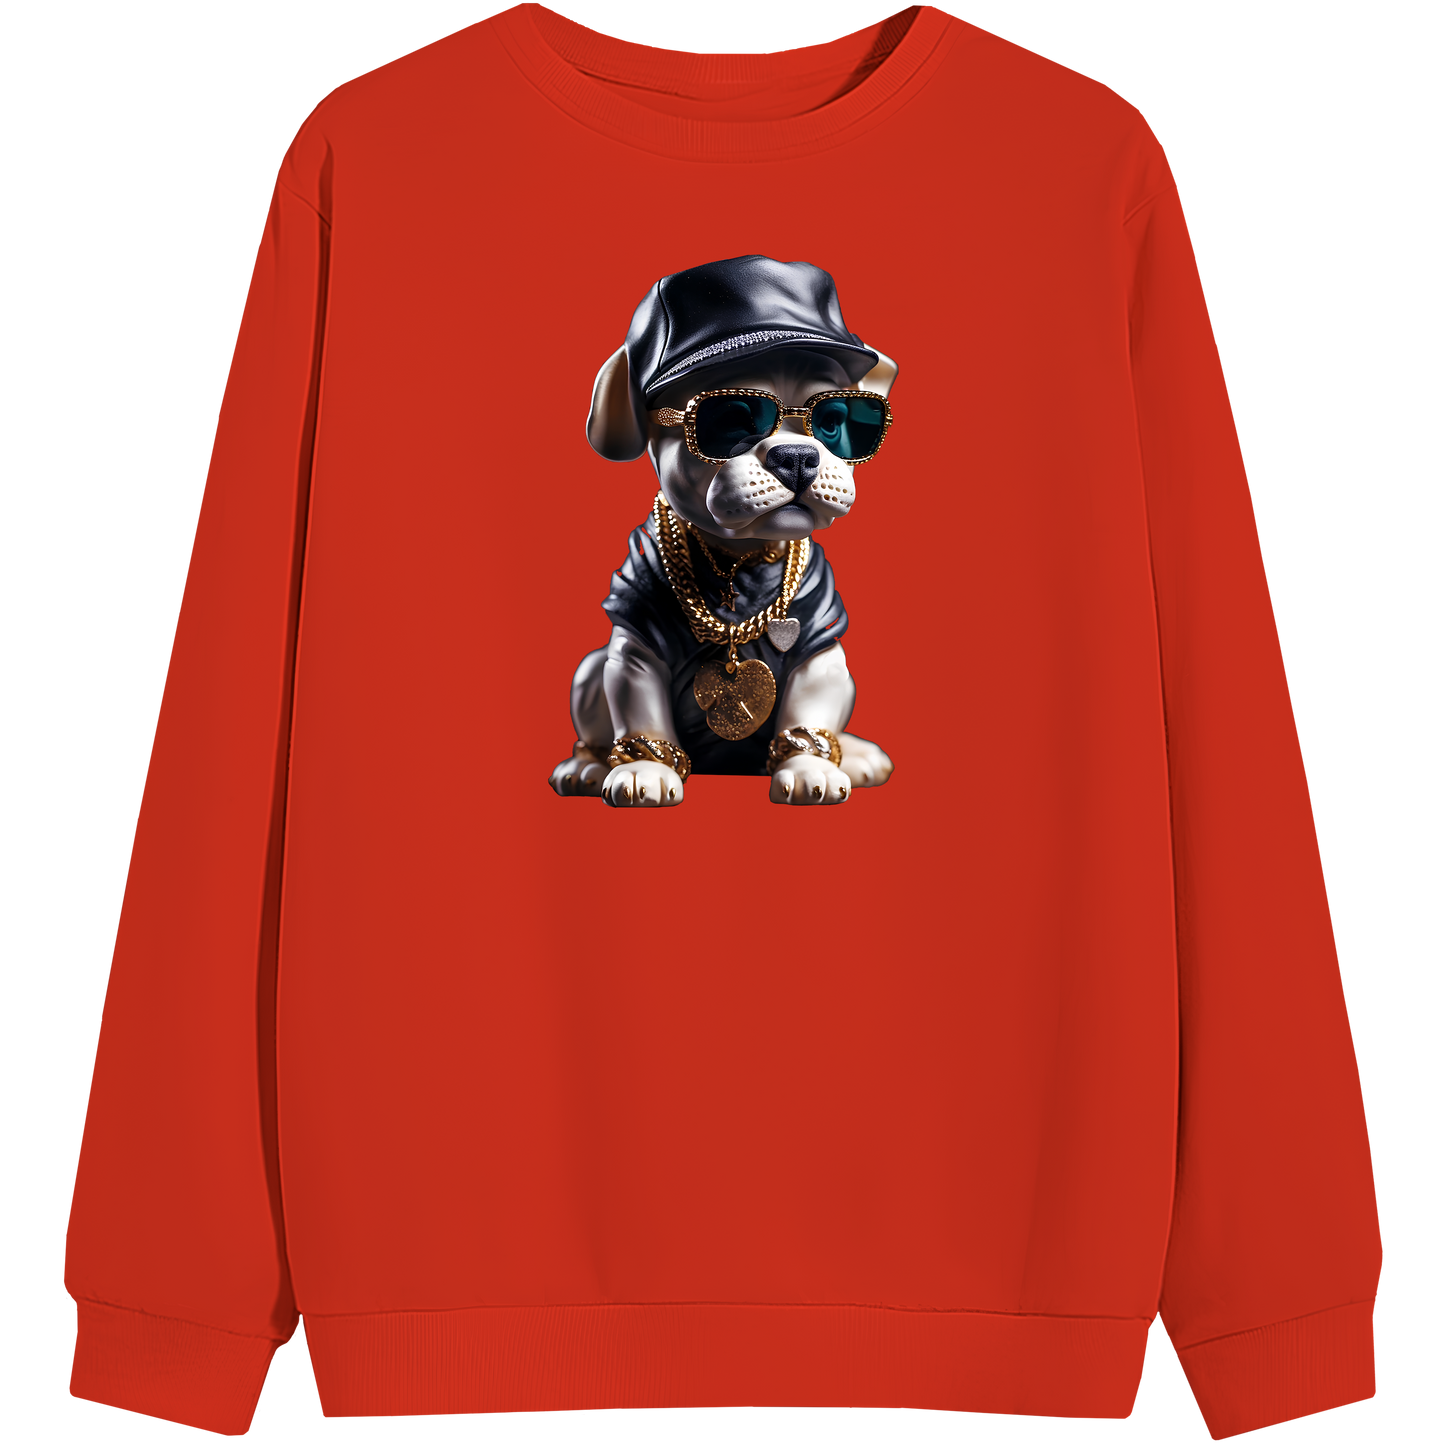 Cool Dog - Sweatshirt